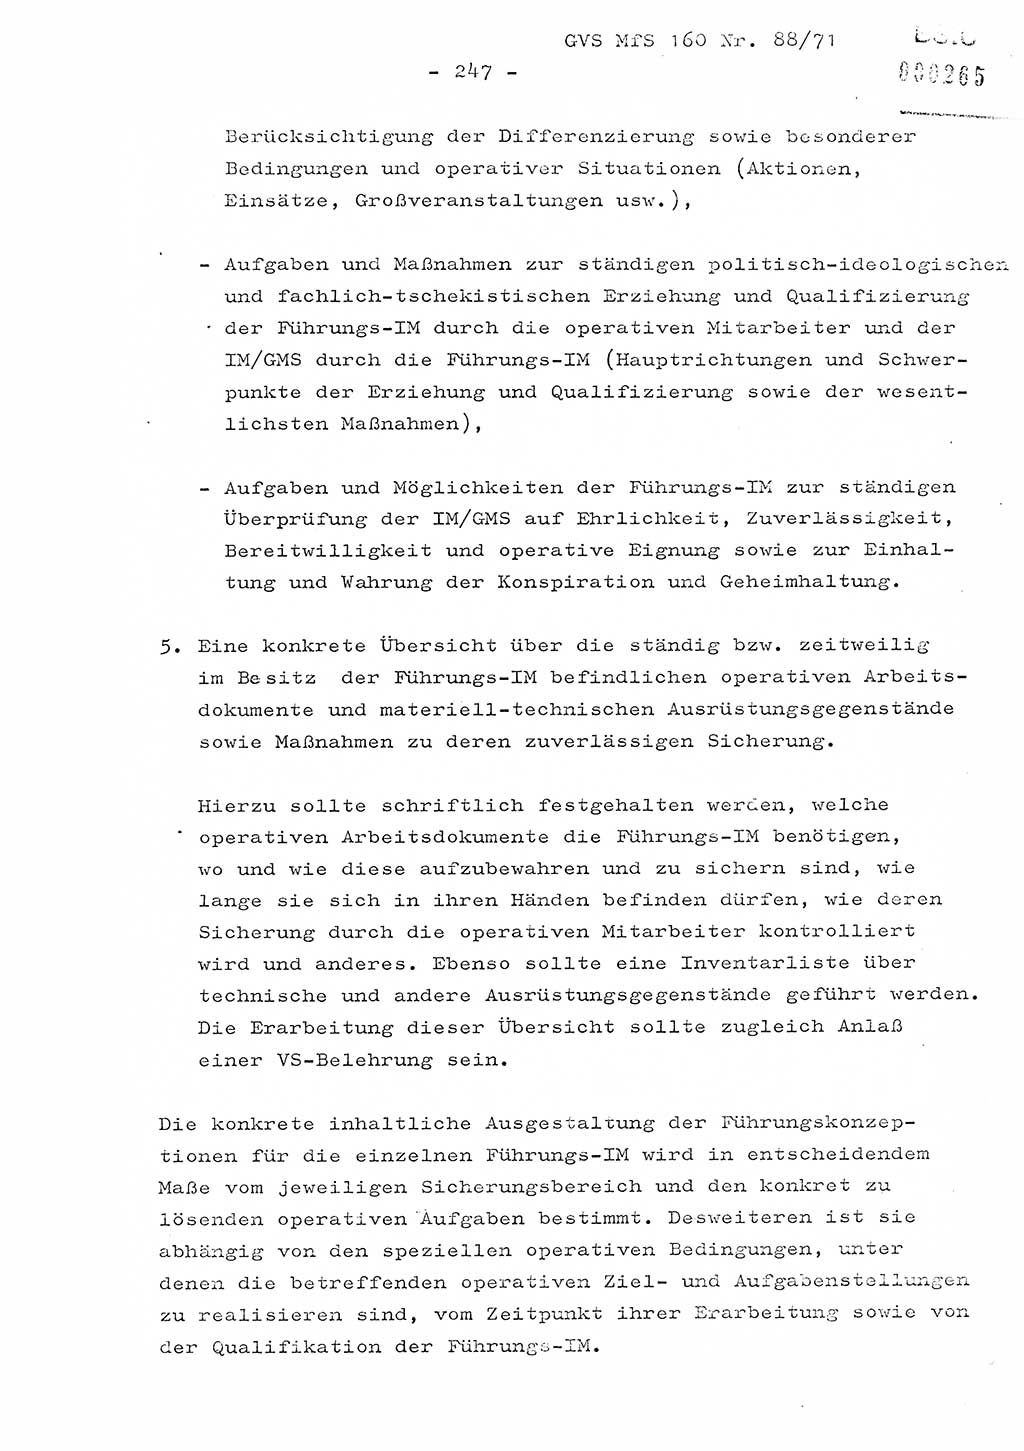 Dissertation Oberstleutnant Josef Schwarz (BV Schwerin), Major Fritz Amm (JHS), Hauptmann Peter Gräßler (JHS), Ministerium für Staatssicherheit (MfS) [Deutsche Demokratische Republik (DDR)], Juristische Hochschule (JHS), Geheime Verschlußsache (GVS) 160-88/71, Potsdam 1972, Seite 247 (Diss. MfS DDR JHS GVS 160-88/71 1972, S. 247)